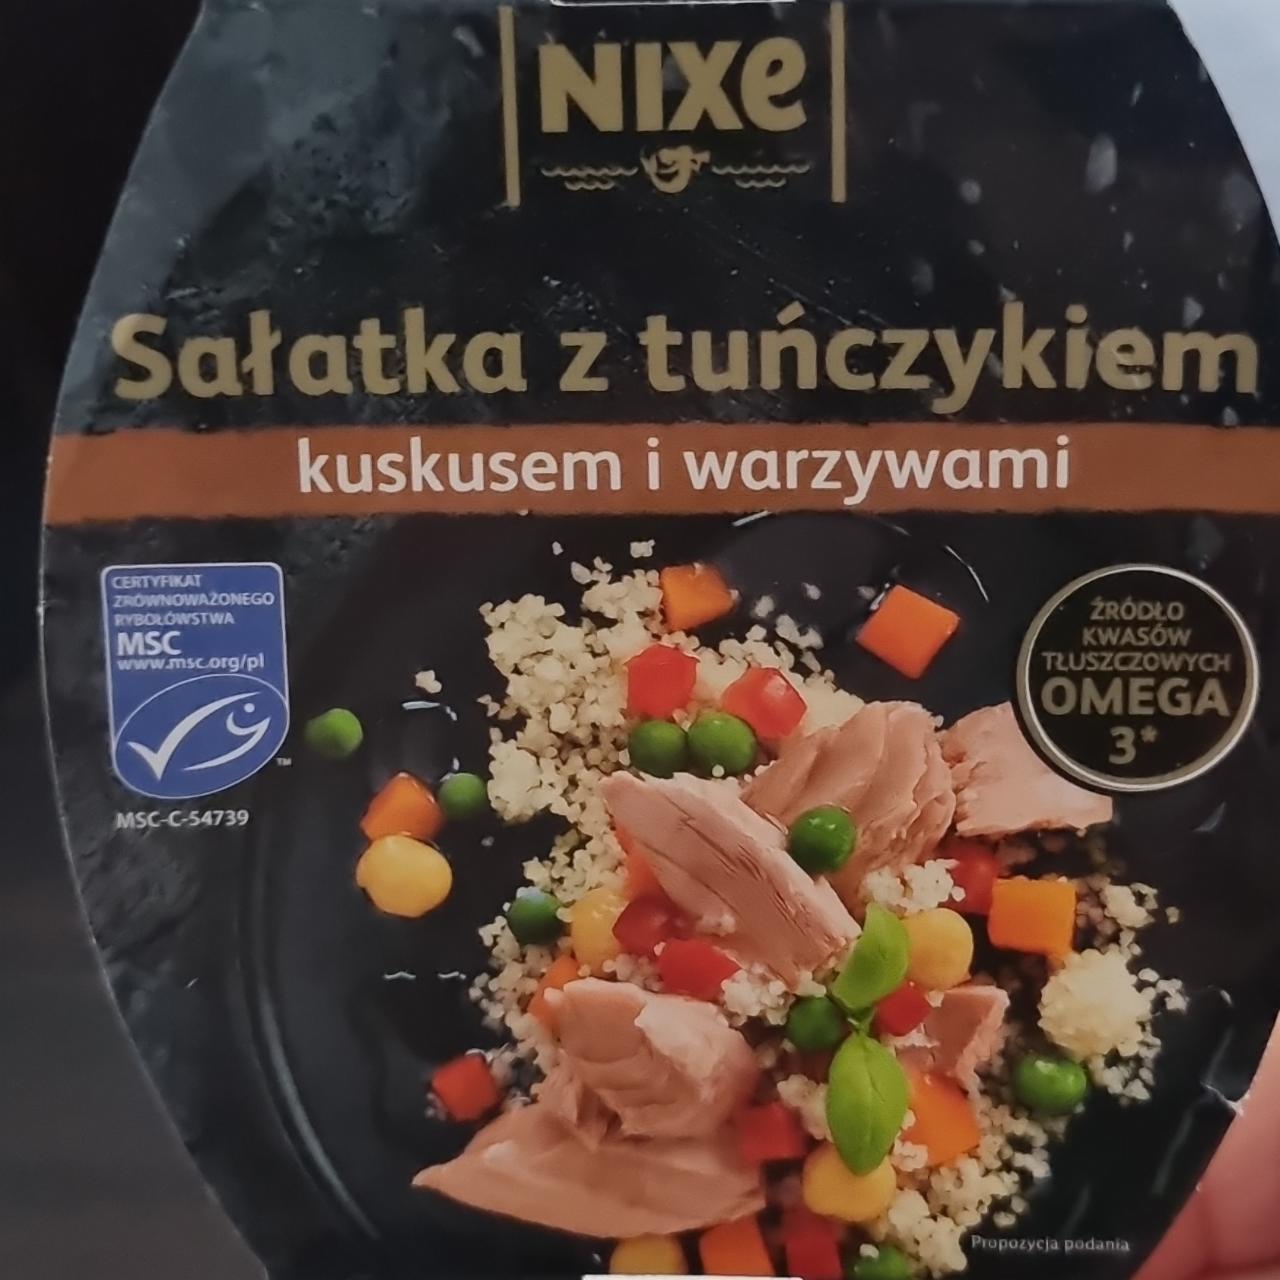 Фото - Salatka z tunczykiem kuskusem i warzywami Nixe